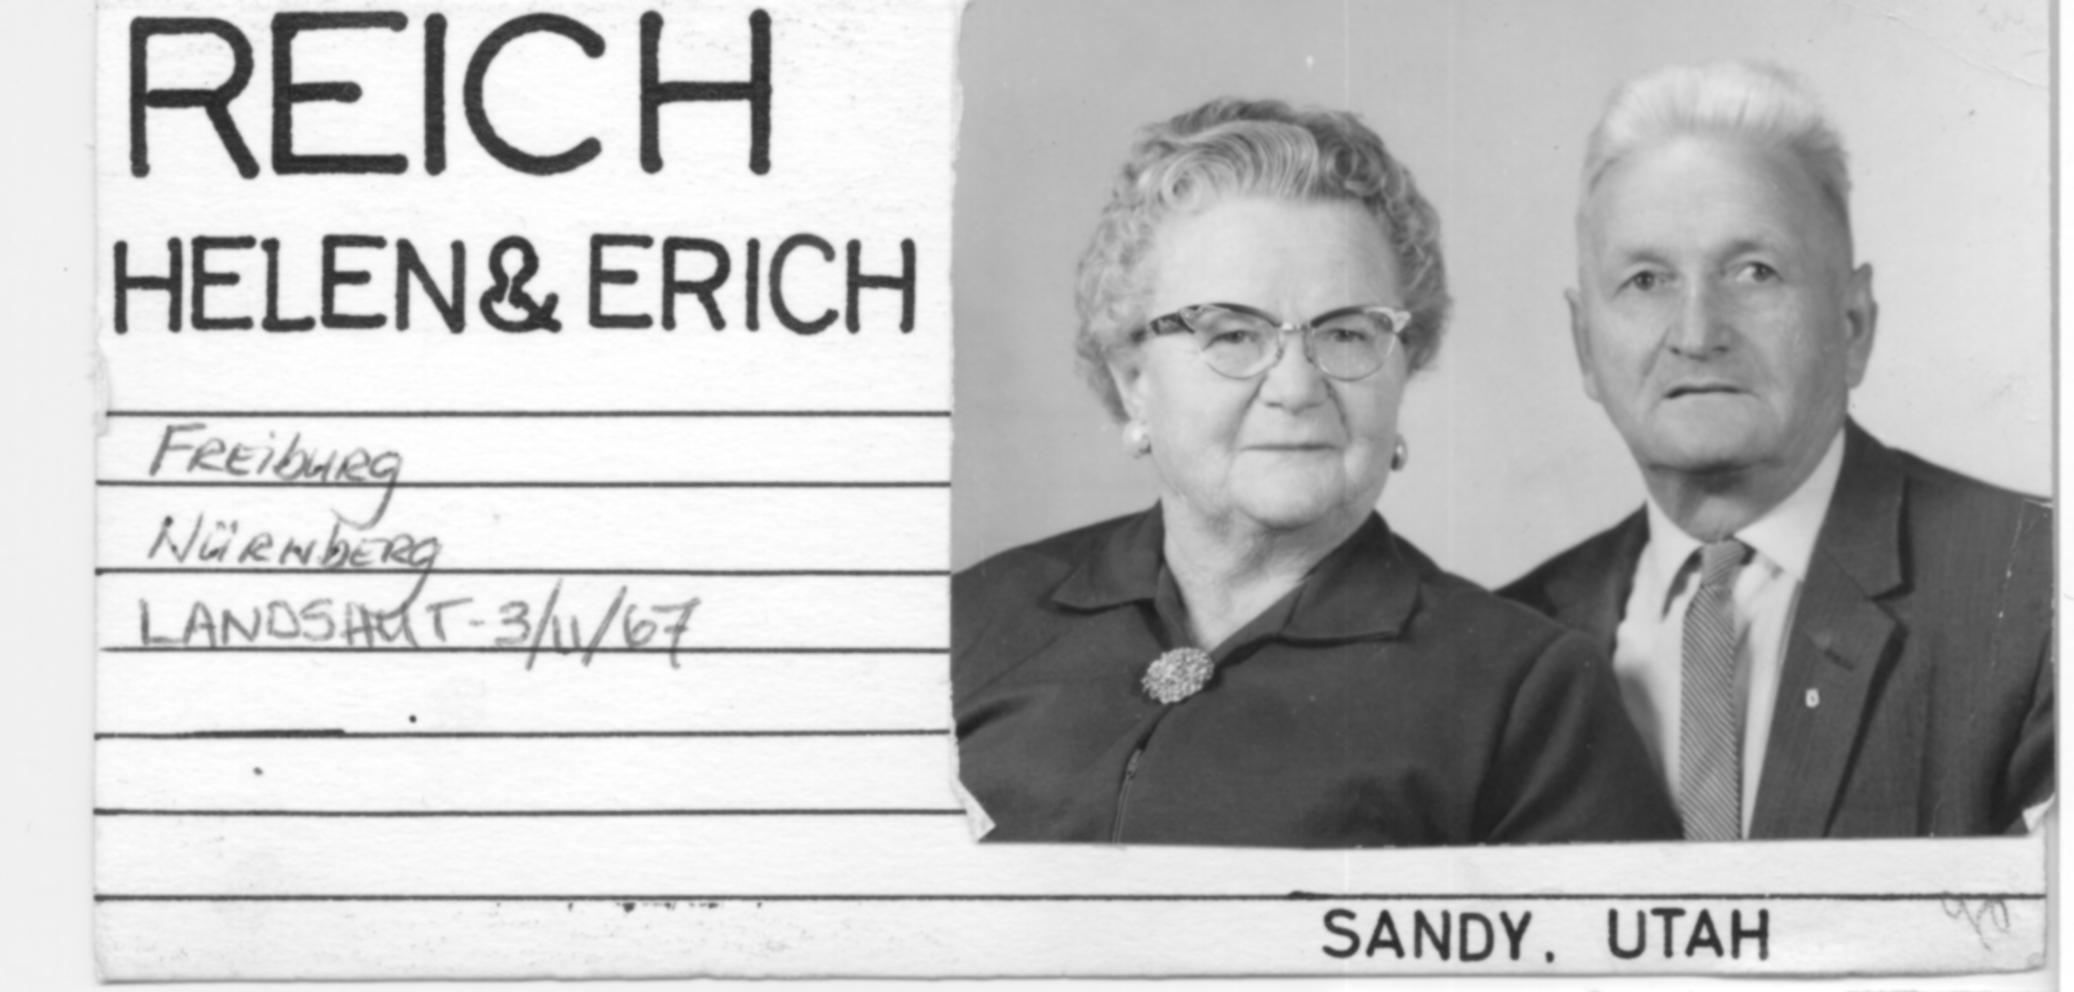 Reich, Helen & Erich